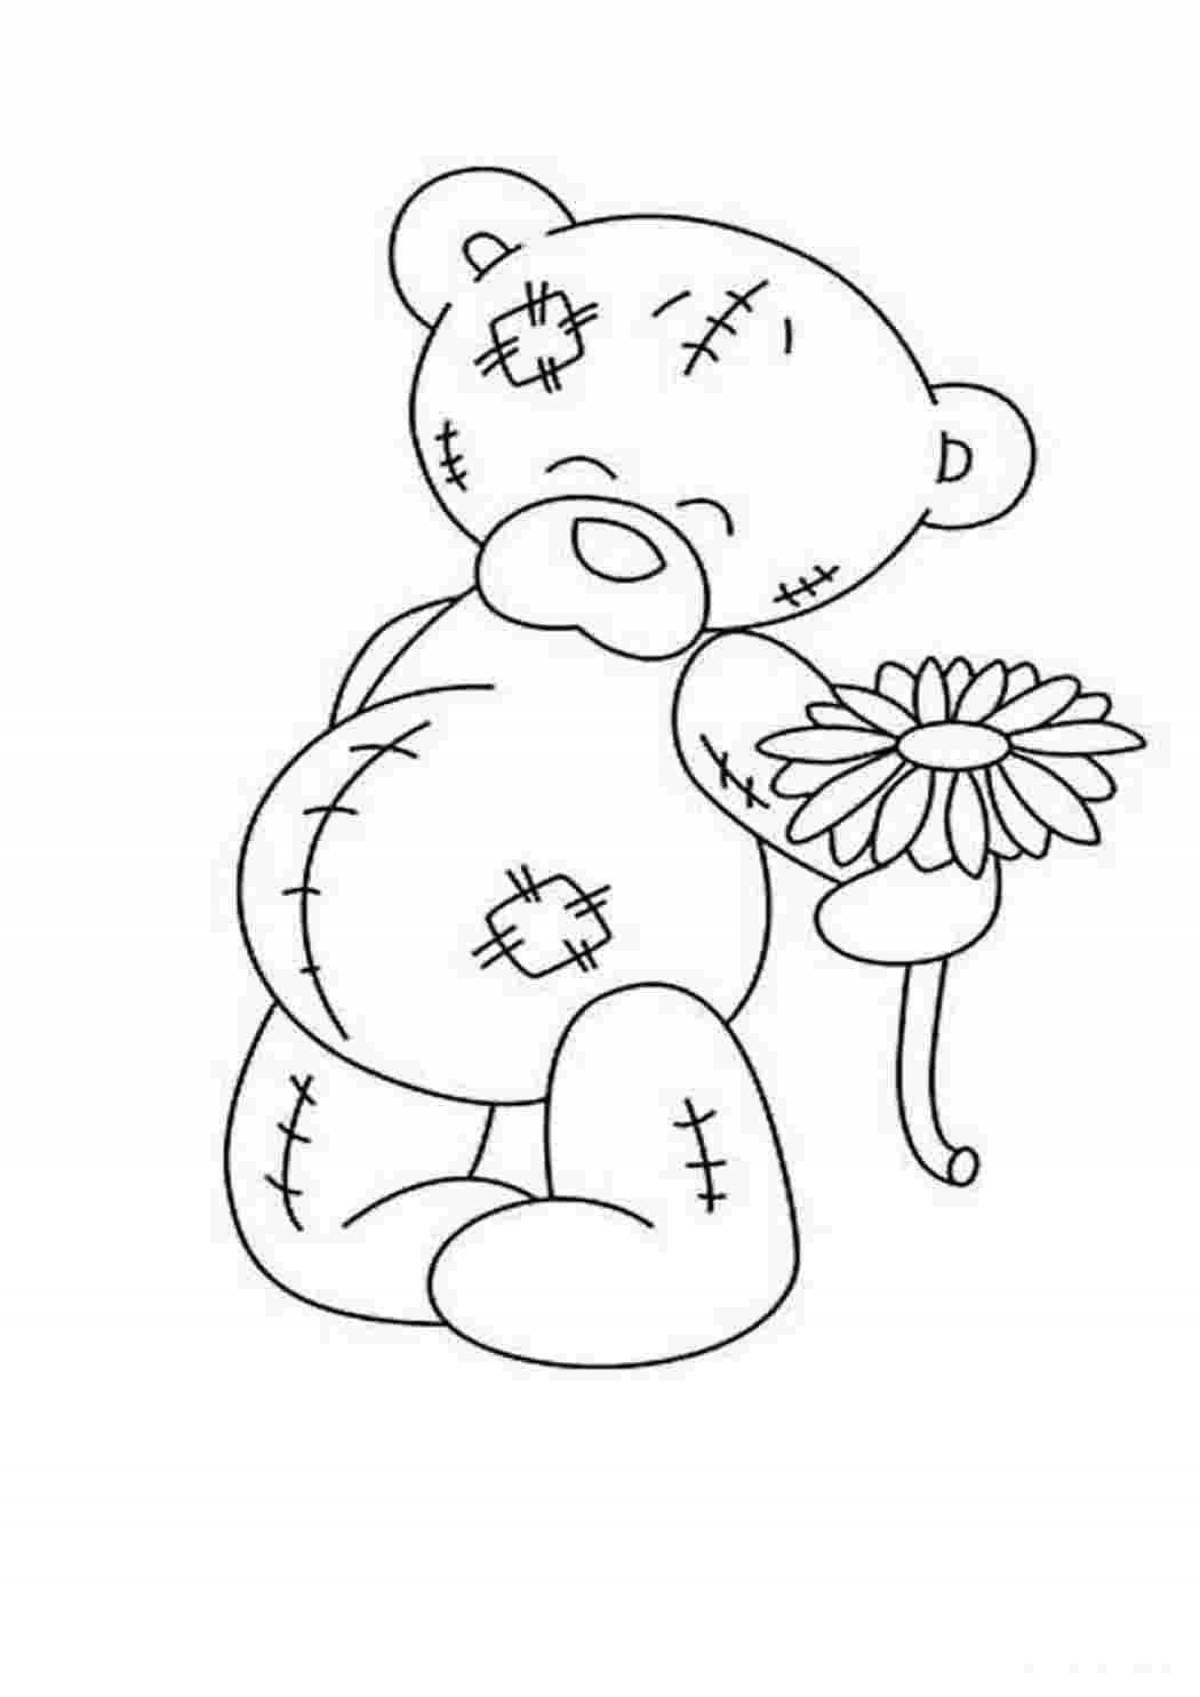 Joyful teddy bear with flowers